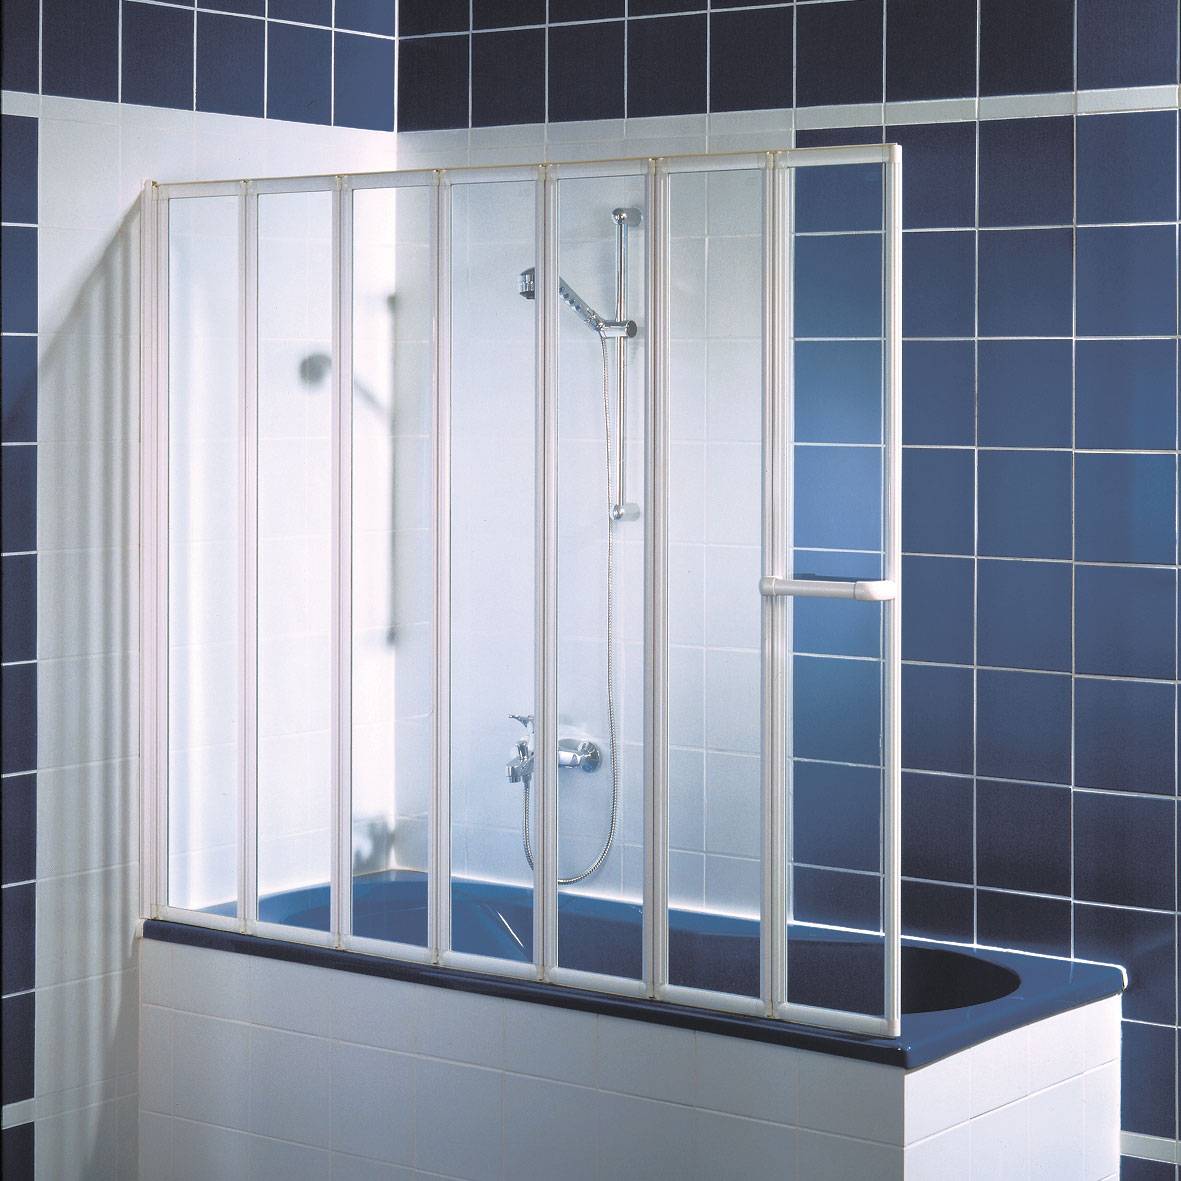 Купить шторку для ванны стеклянную раздвижную. Шторка Ravak avdp3-170. Шторка для ванной раздвижная. Шторки для ванной пластиковые раздвижные. Шторка для ванной раздвижная пластик.